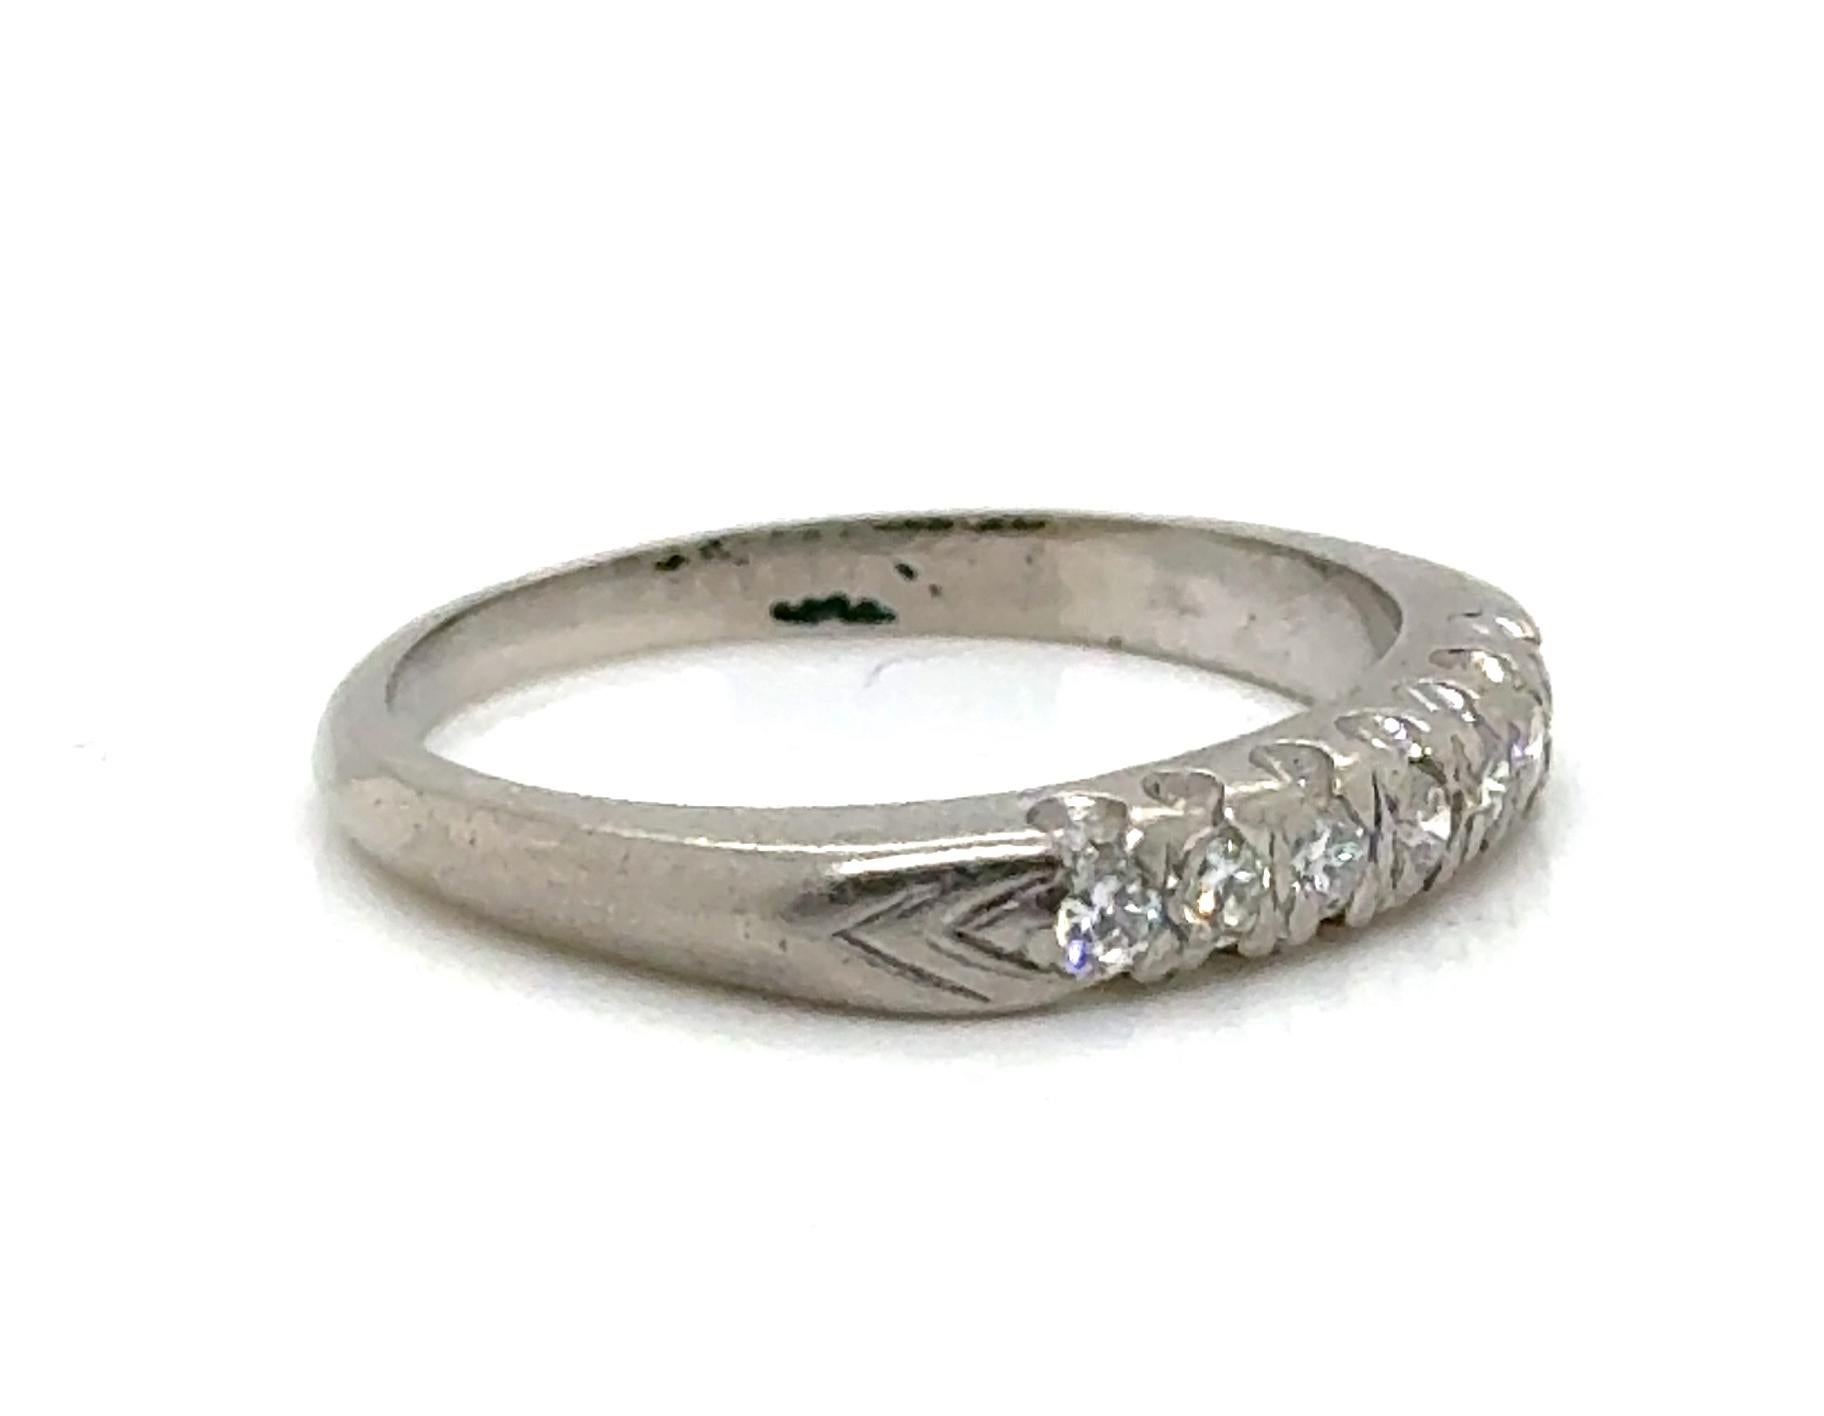 Echtes Original Art Deco Antik aus den 1930er Jahren Ehering .21ct Diamond Platinum Anniversary Ring 



Präsentiert 7 saubere und farblose natürliche Diamanten mit rundem Brillantschliff

Garantiert 100% natürlich abgebaute Diamanten

Bestehend aus